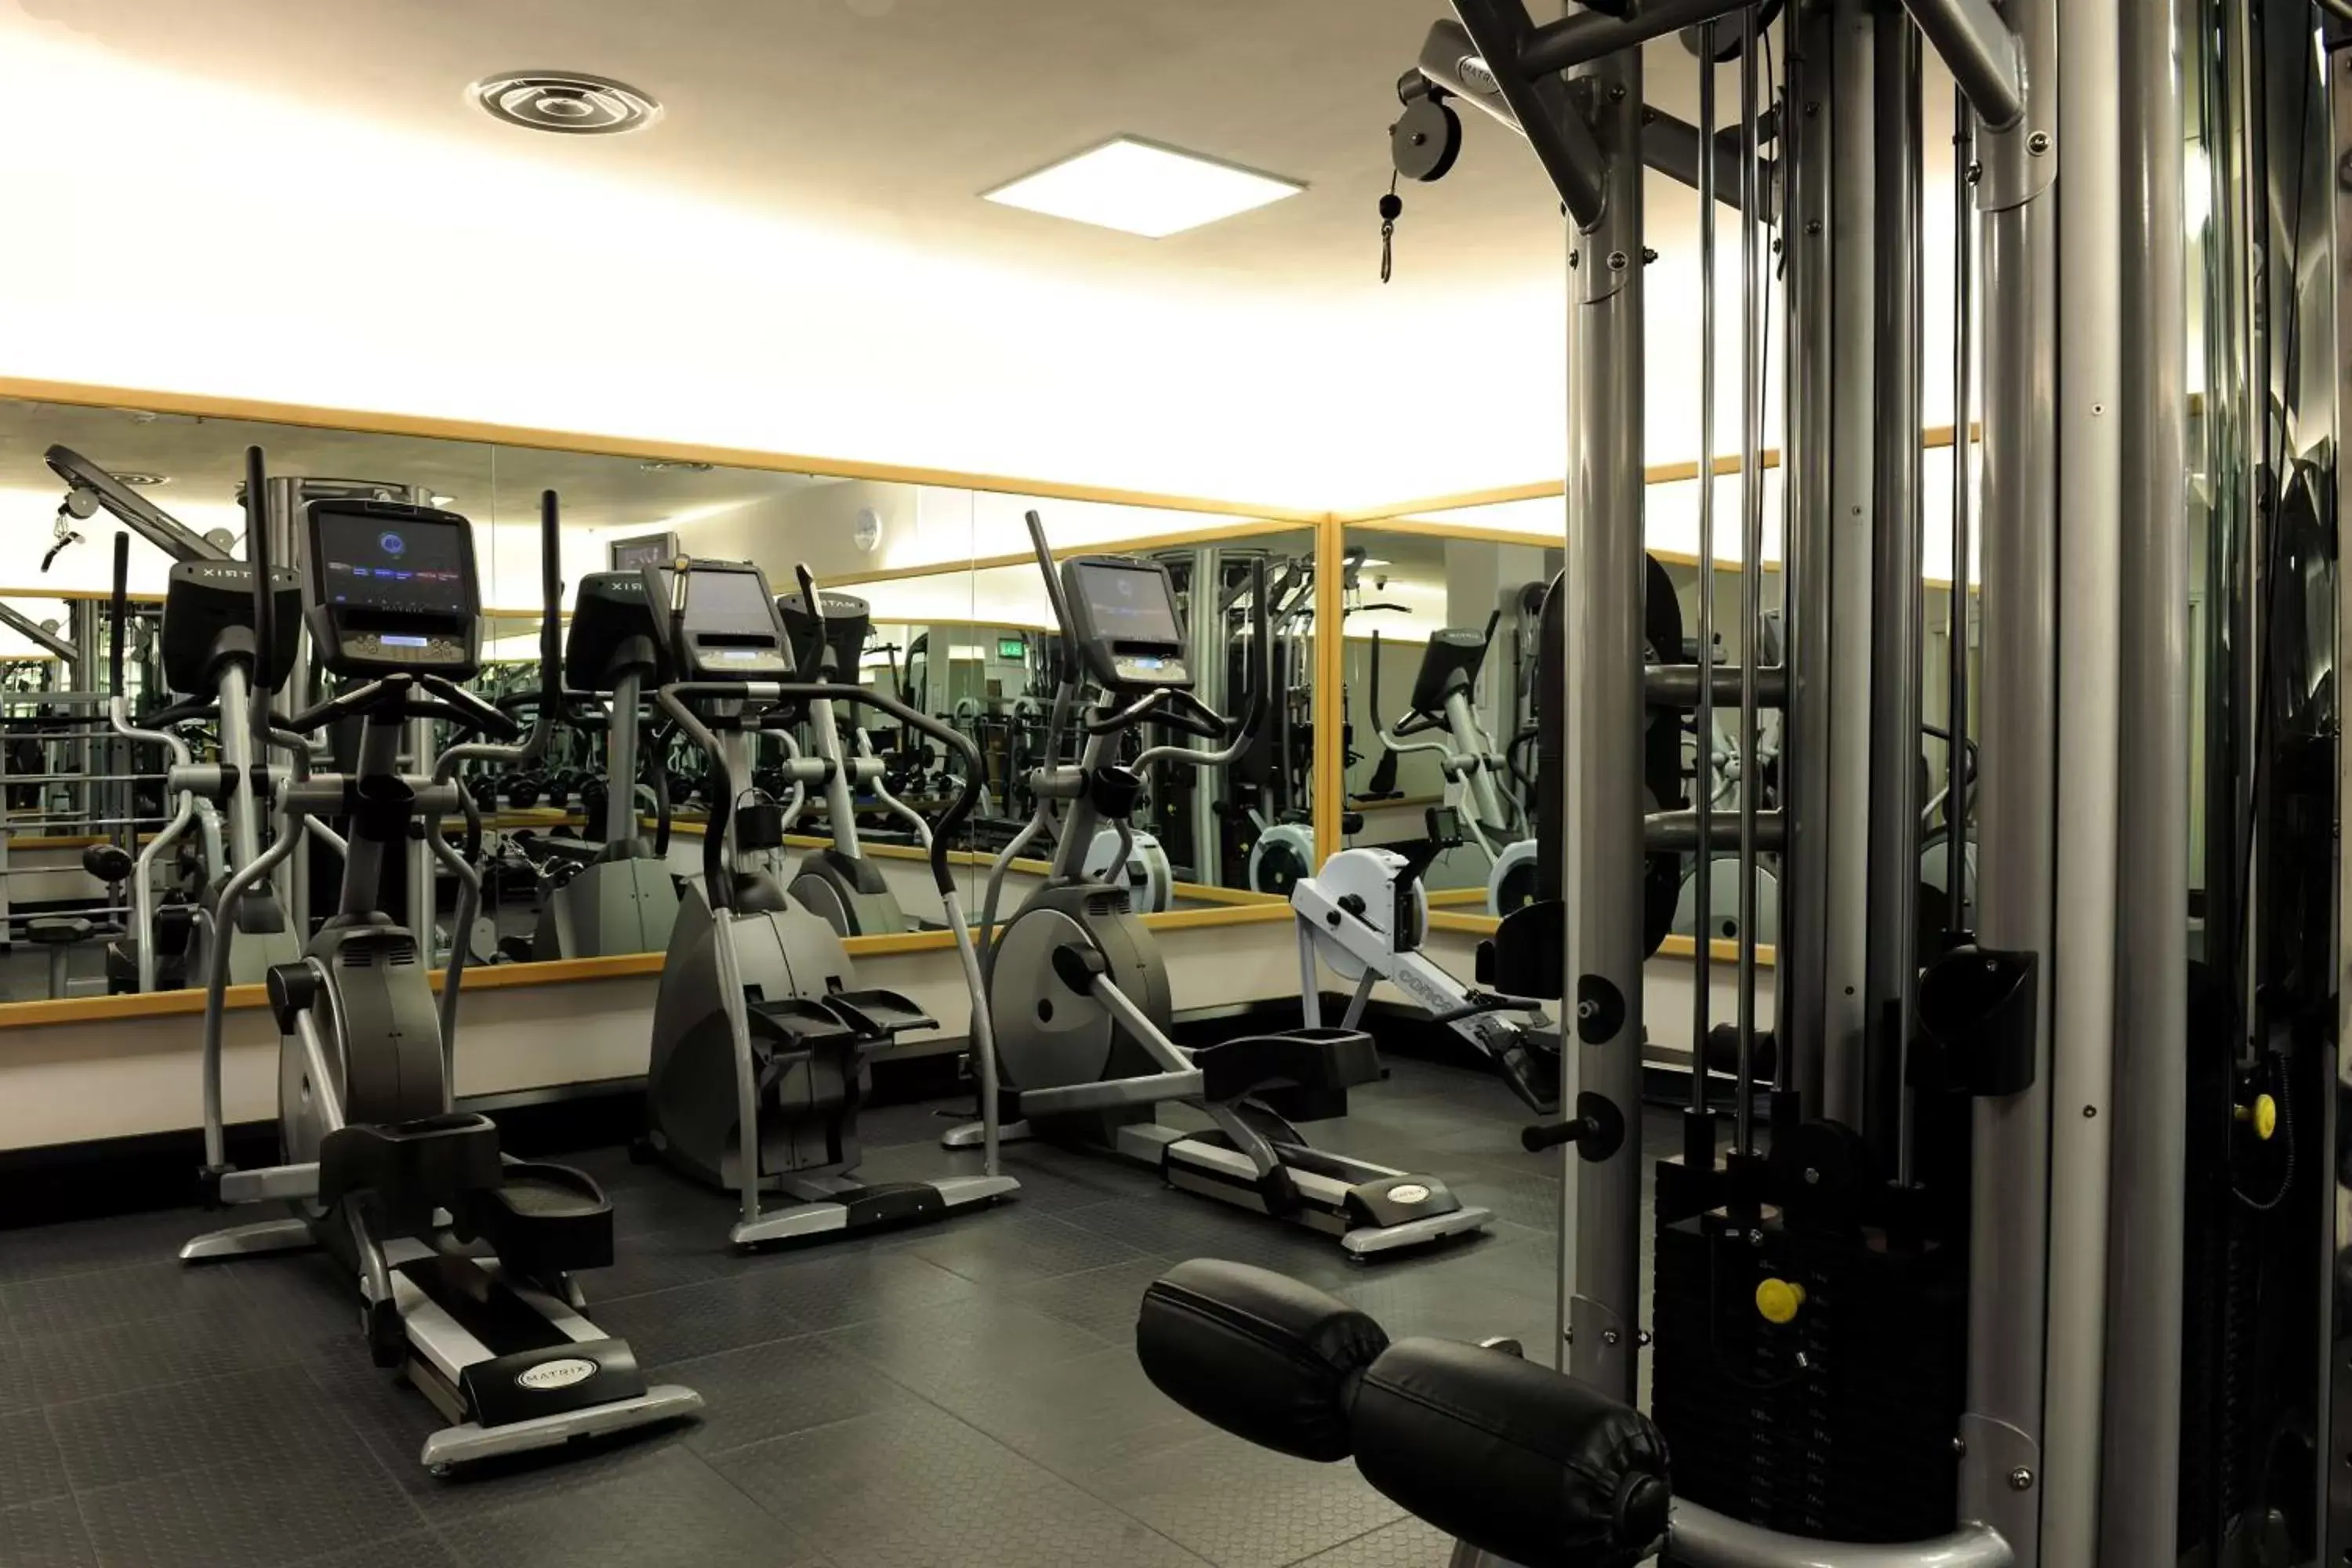 Fitness centre/facilities in Hyatt Regency Birmingham